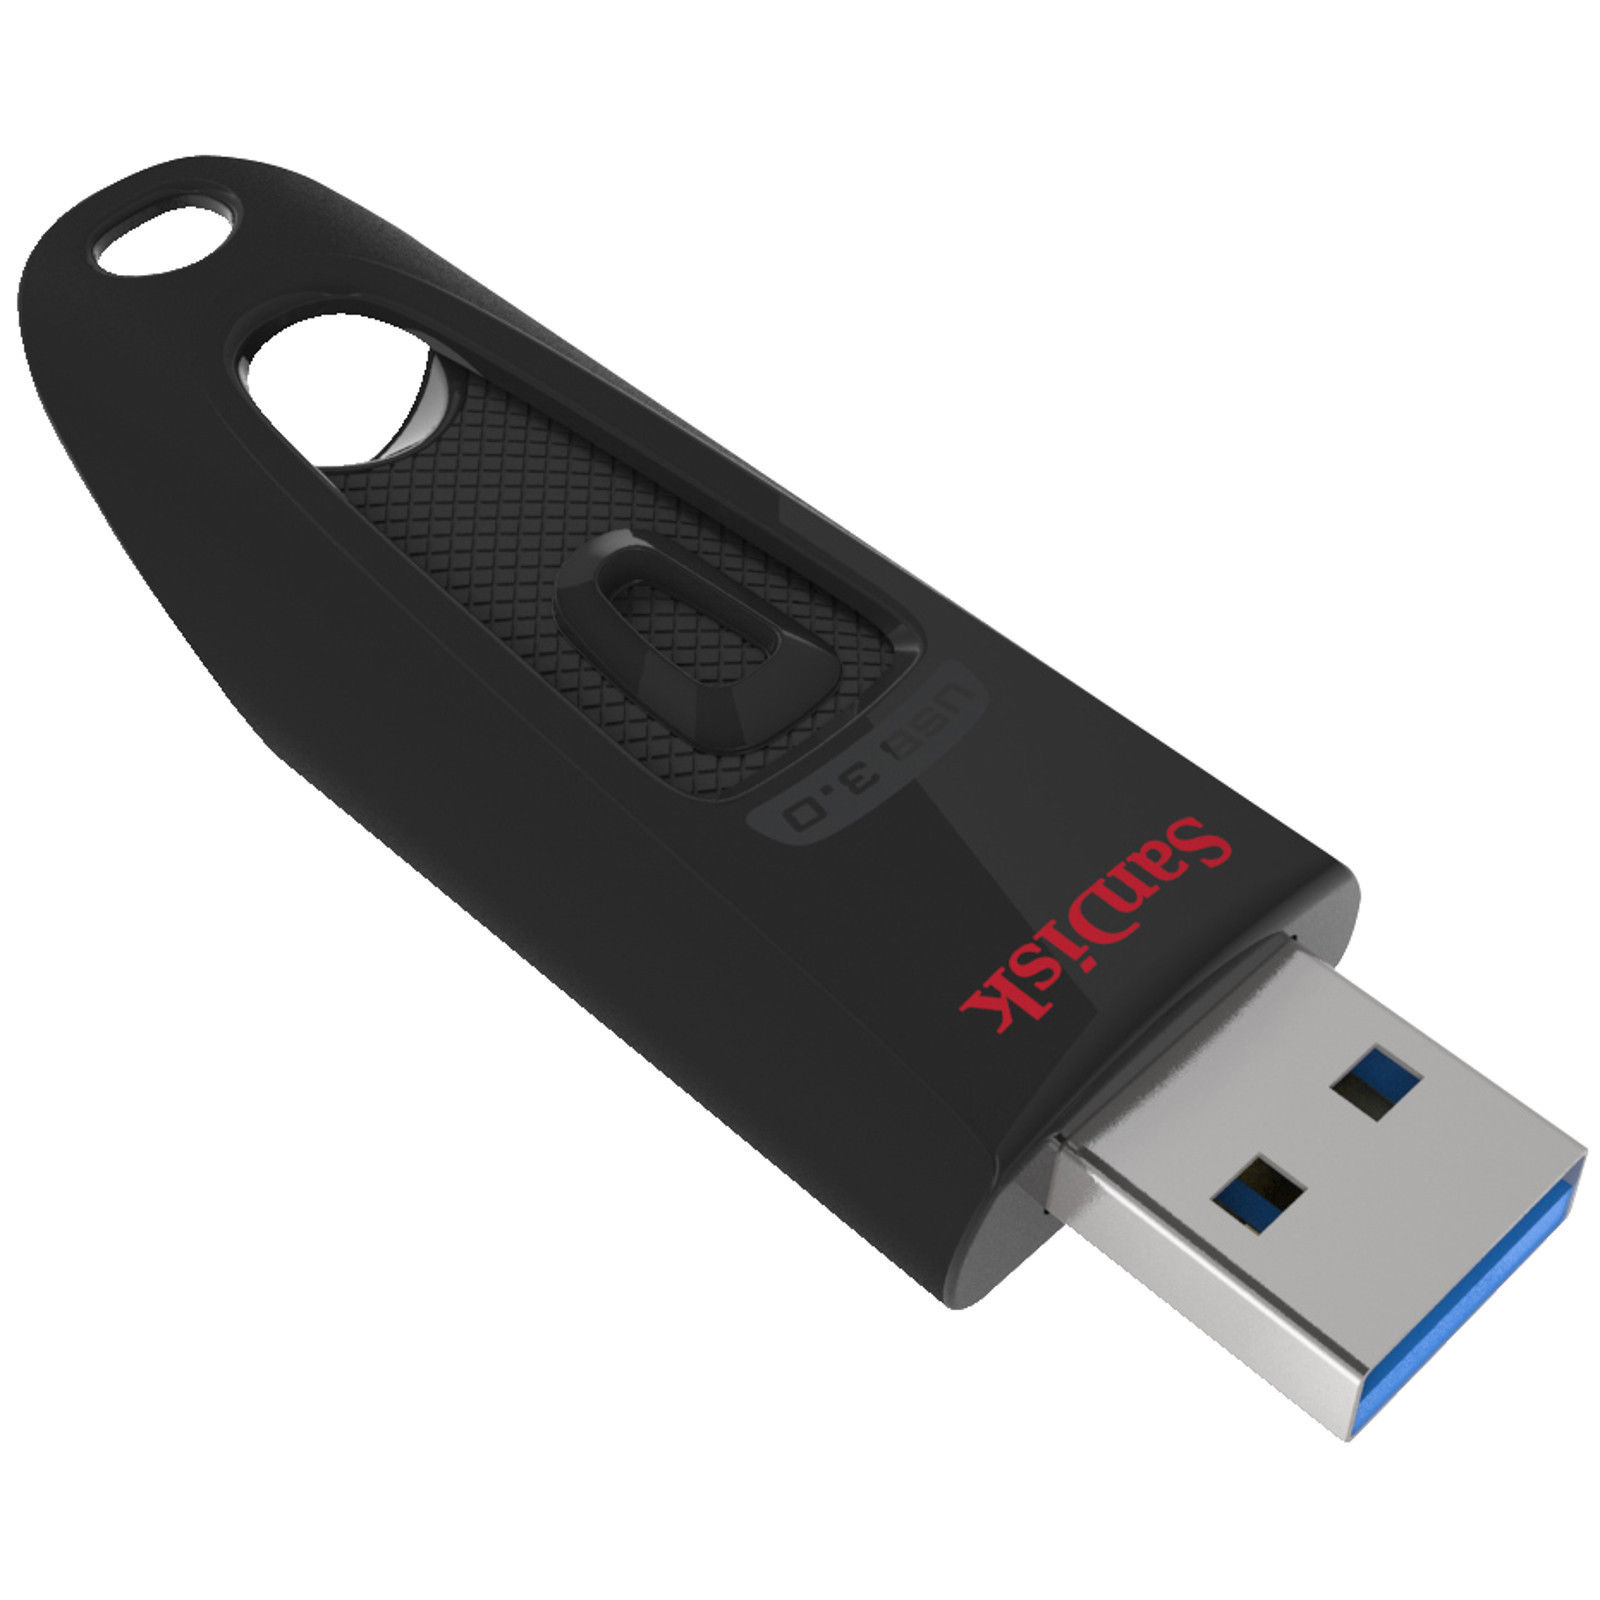 Bild zu 128 GB USB-Stick Sandisk Ultra (USB 3.0) für 25€